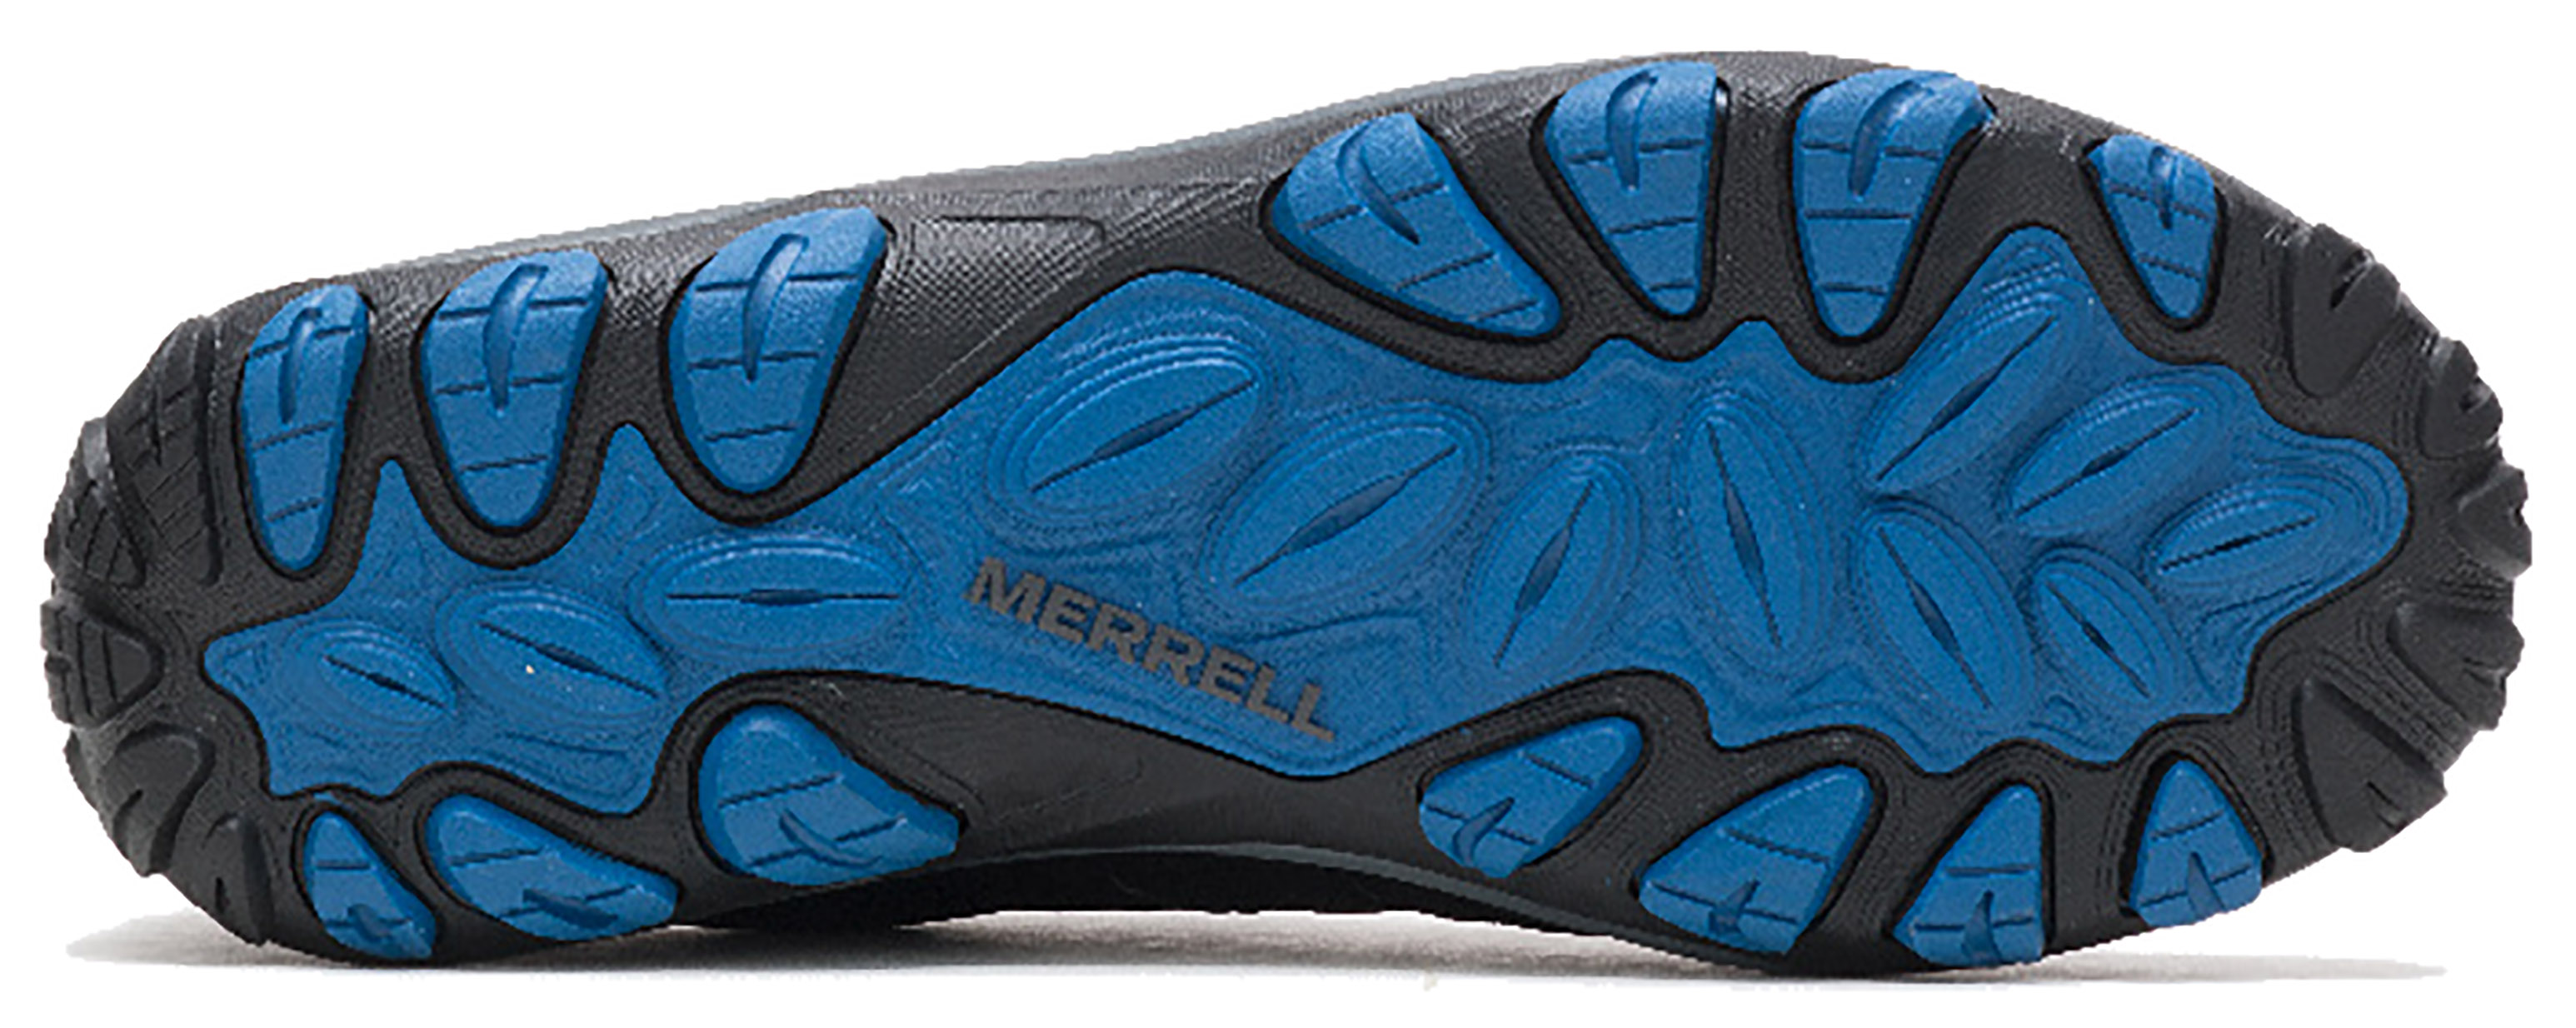 Zapatillas montaña Merrell Accentor 3 Sport GTX gris negro hombre